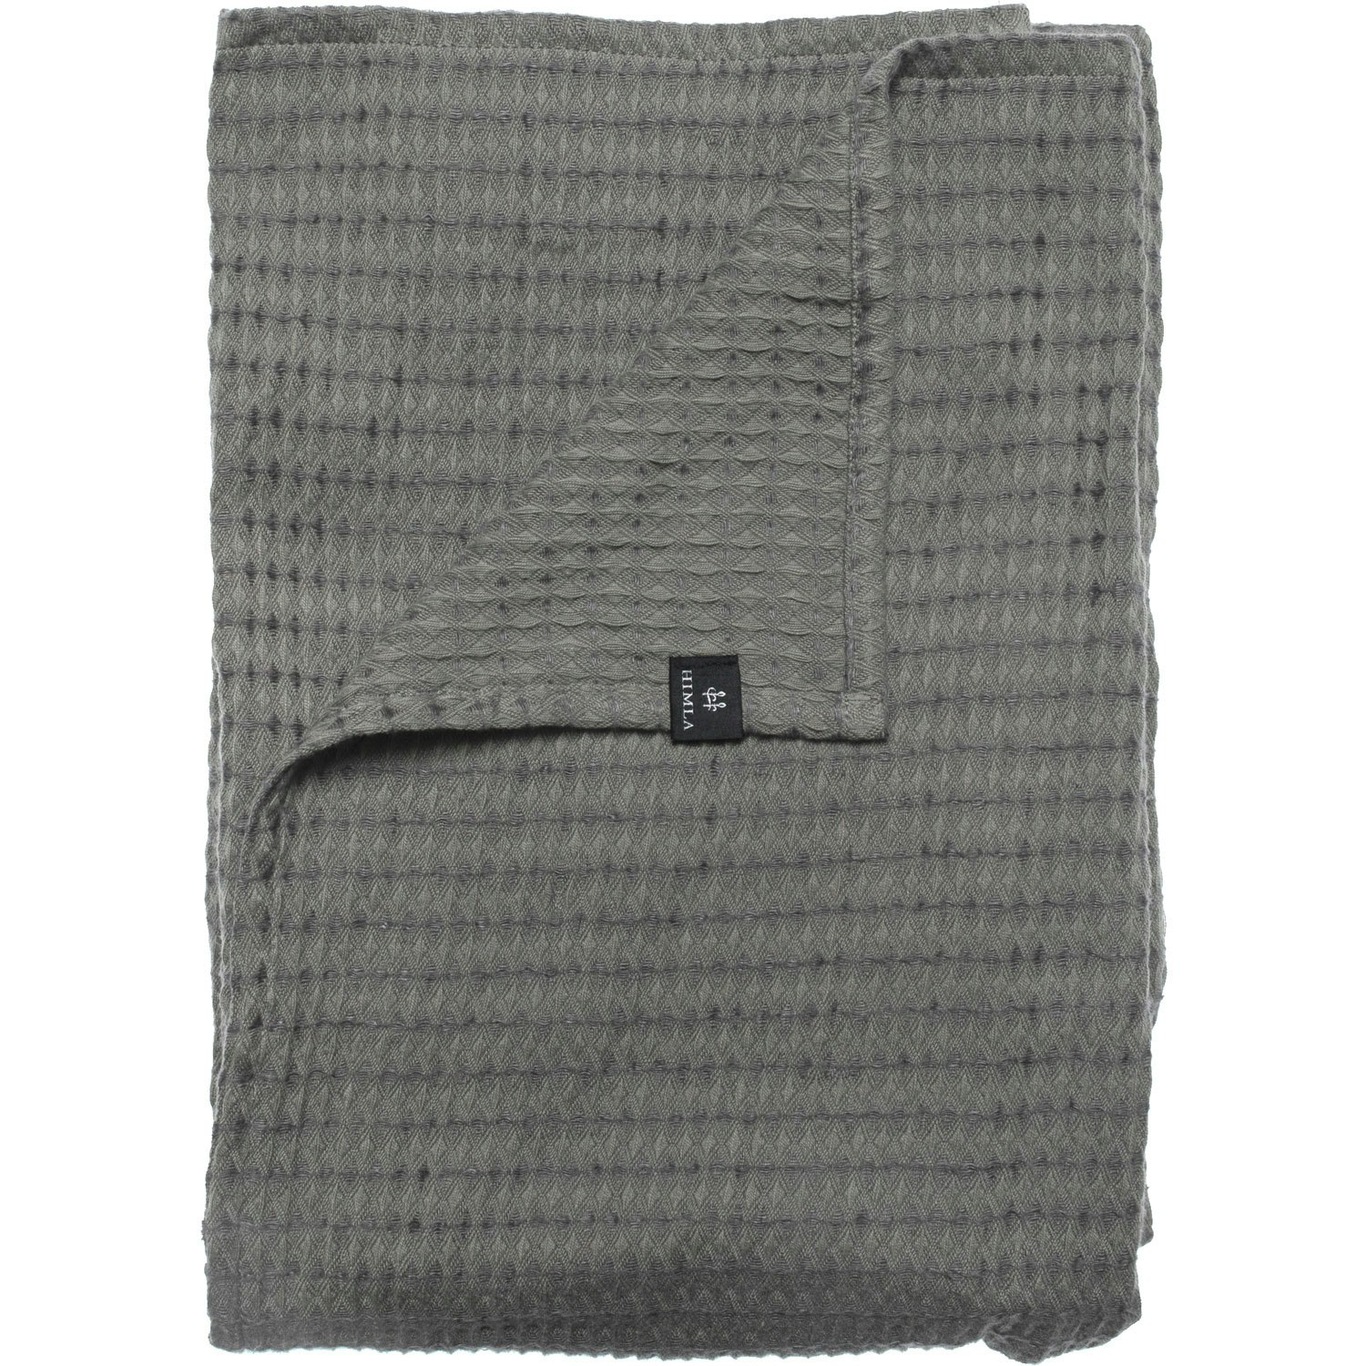 Ego Towel 50x70 cm, Charcoal